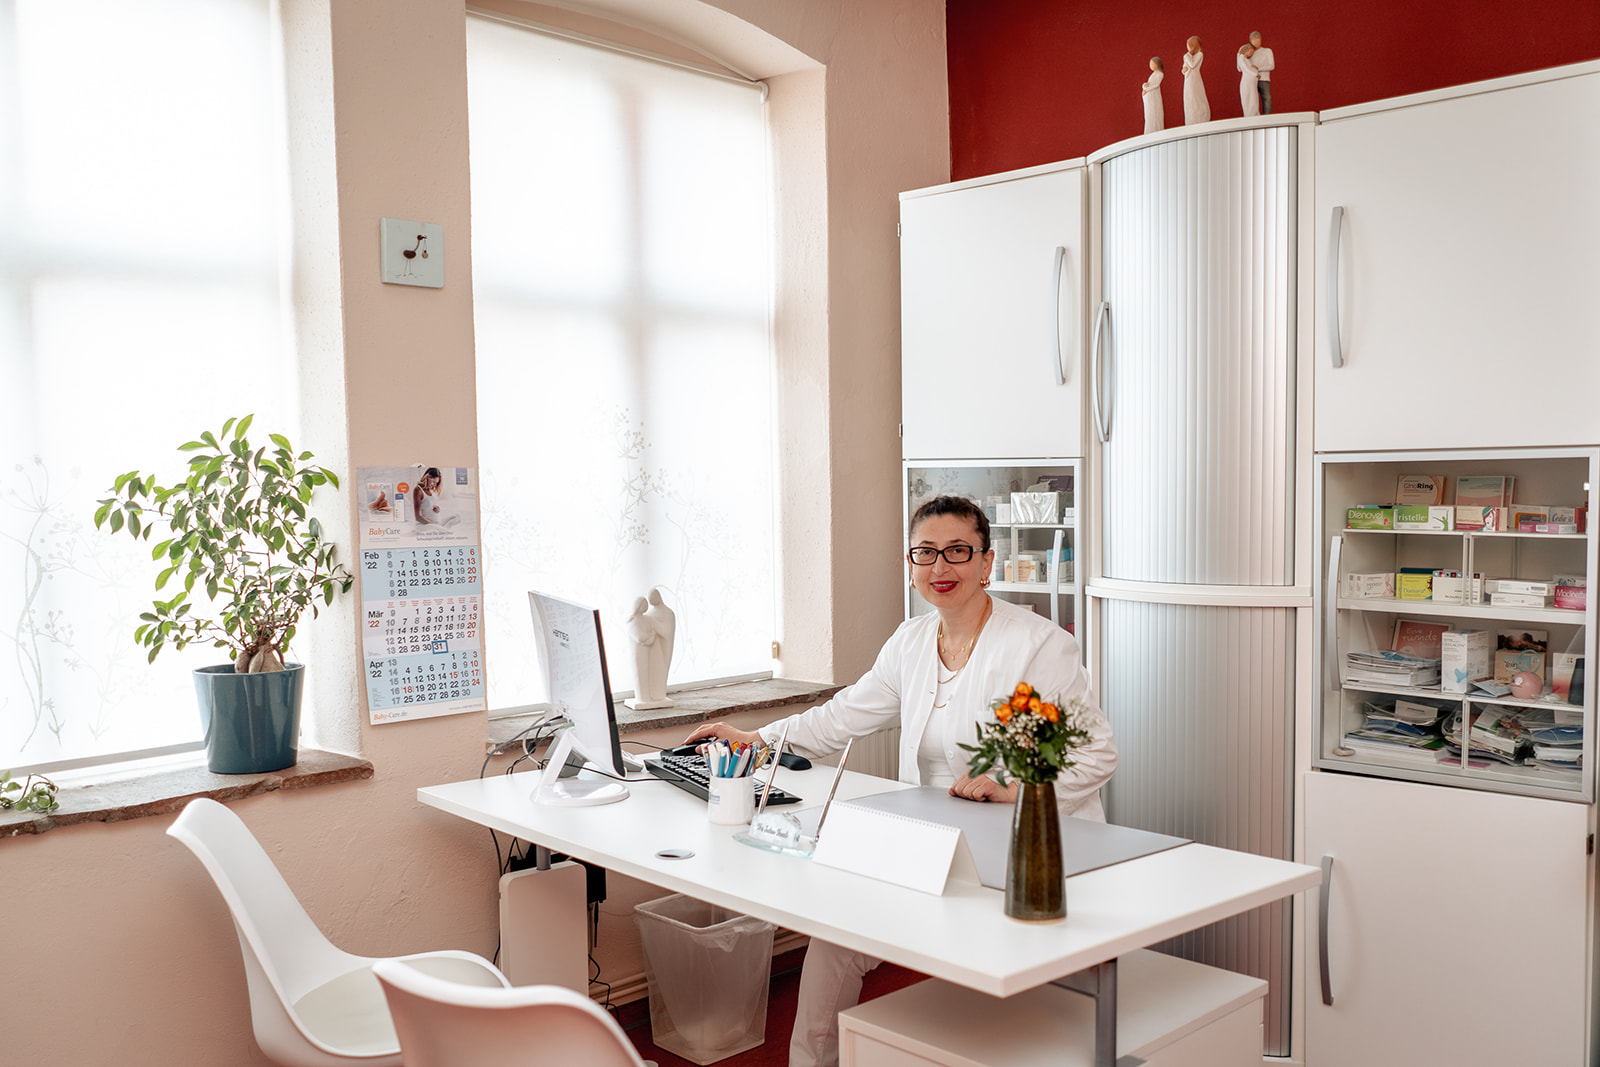 Frauenarztpraxis in Lübeck Sultan Dereli